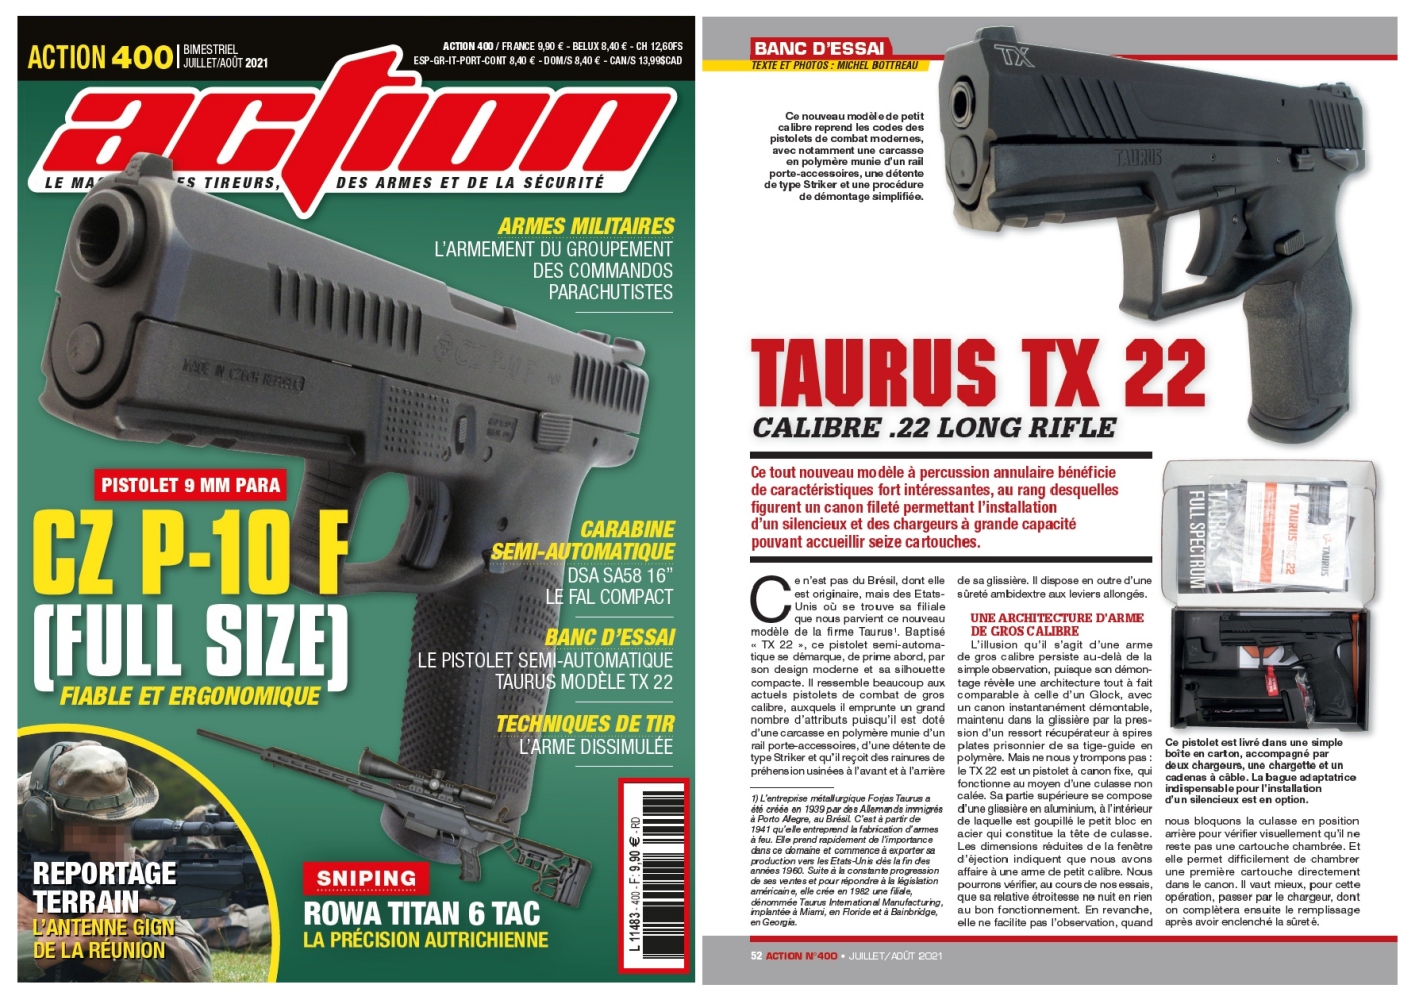 Le banc d’essai du pistolet Taurus TX 22 a été publié sur 6 pages dans le magazine Action n°400 (juillet-août 2021).